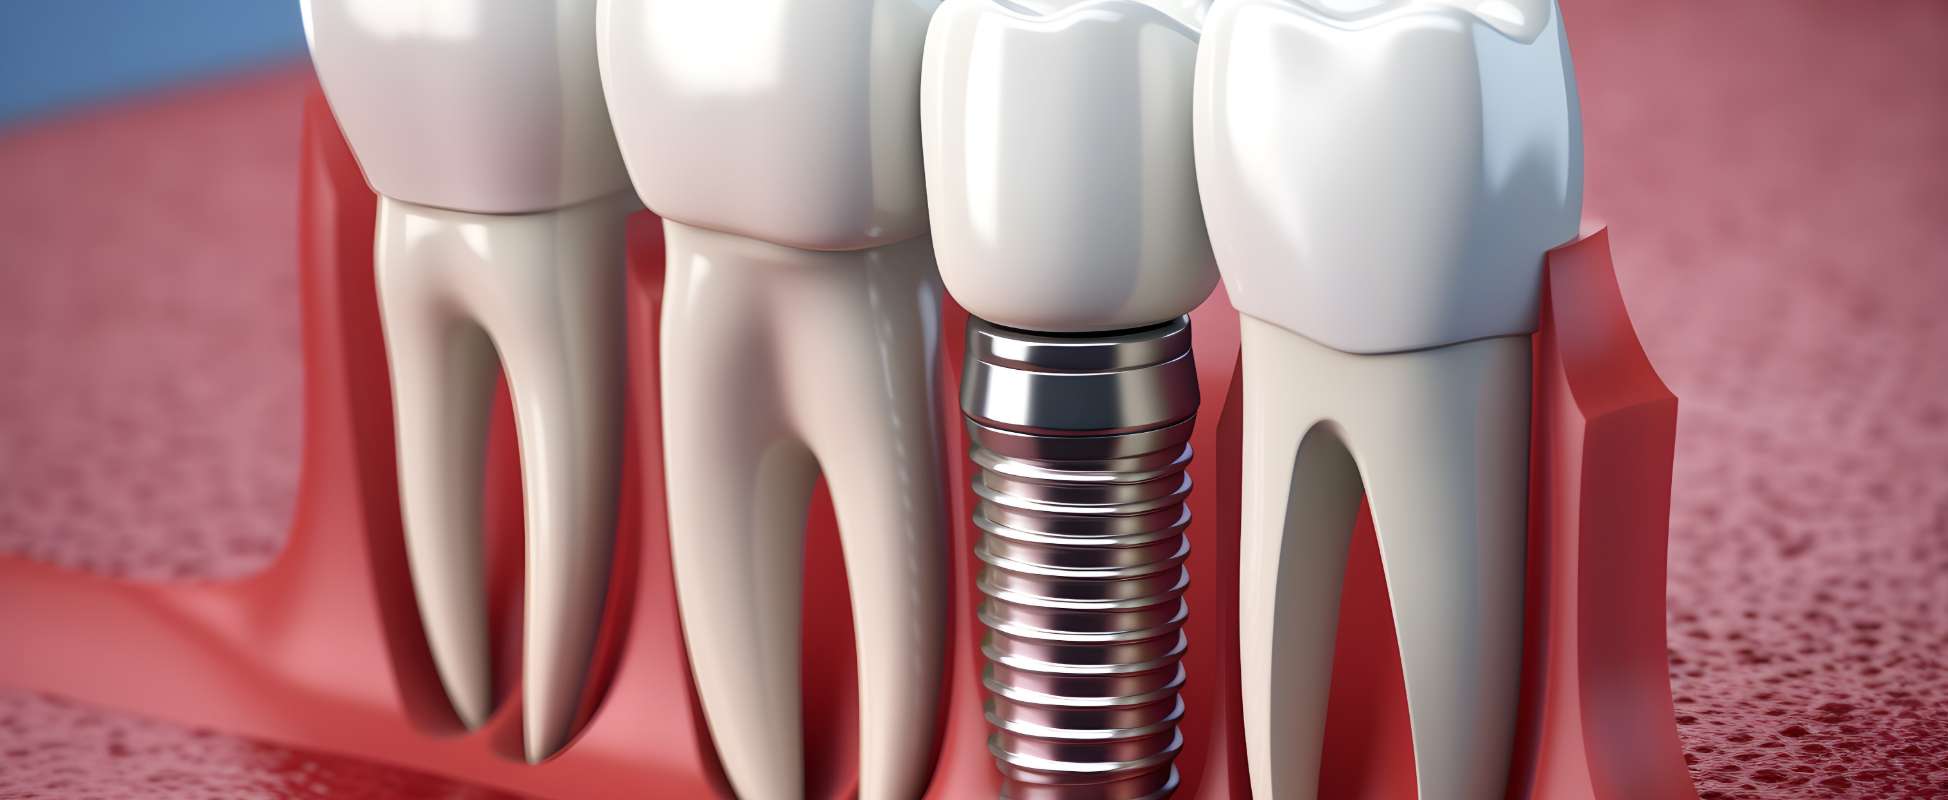 「歯周組織再生療法やインプラント治療など」先端的な治療にも対応